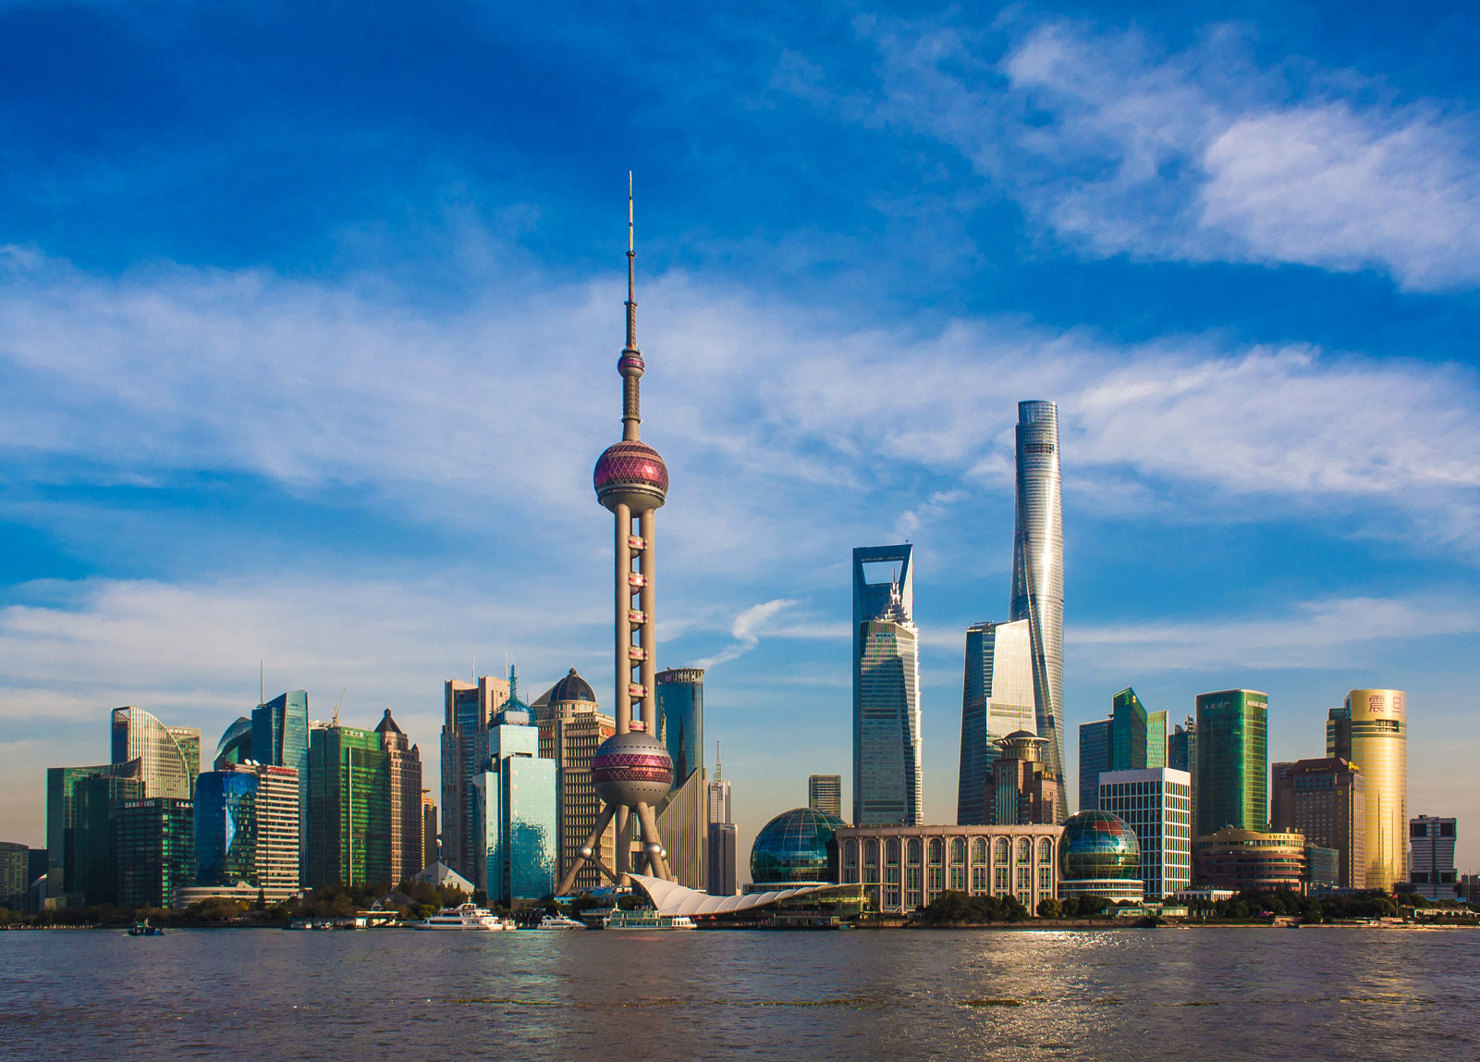 Giao dịch bất động sản tại Trung Quốc diễn ra sôi động với điểm nhấn là thương vụ mua cổ phần dự án tại Thượng Hải trị giá nửa tỷ USD.